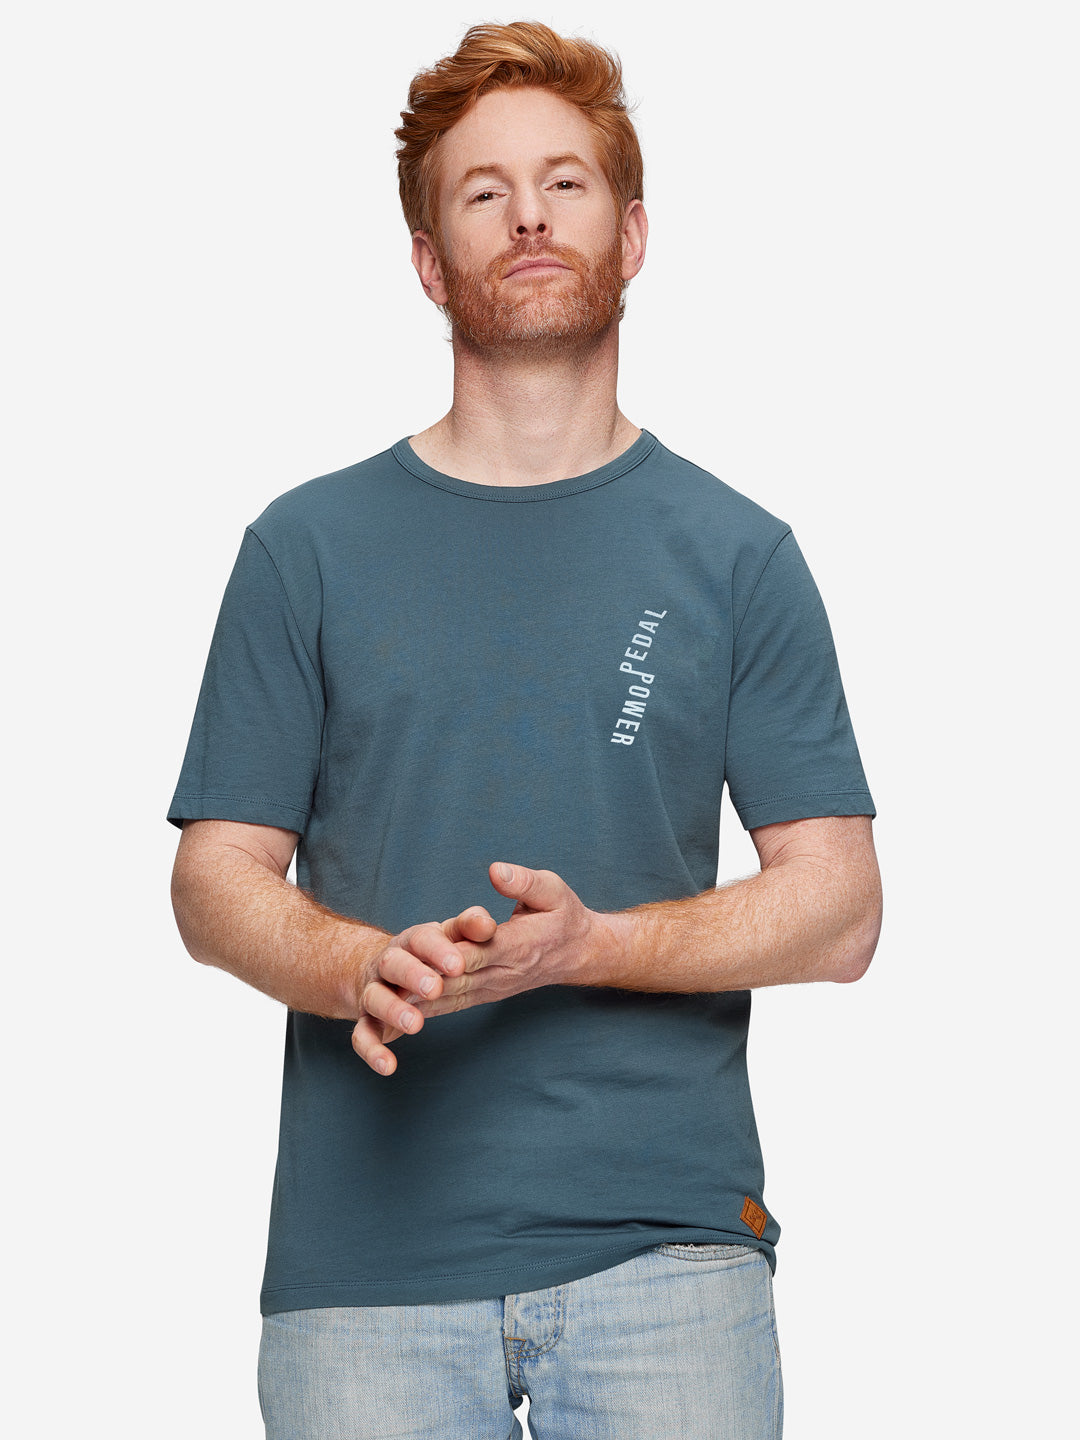 Pedal Power - T-shirt